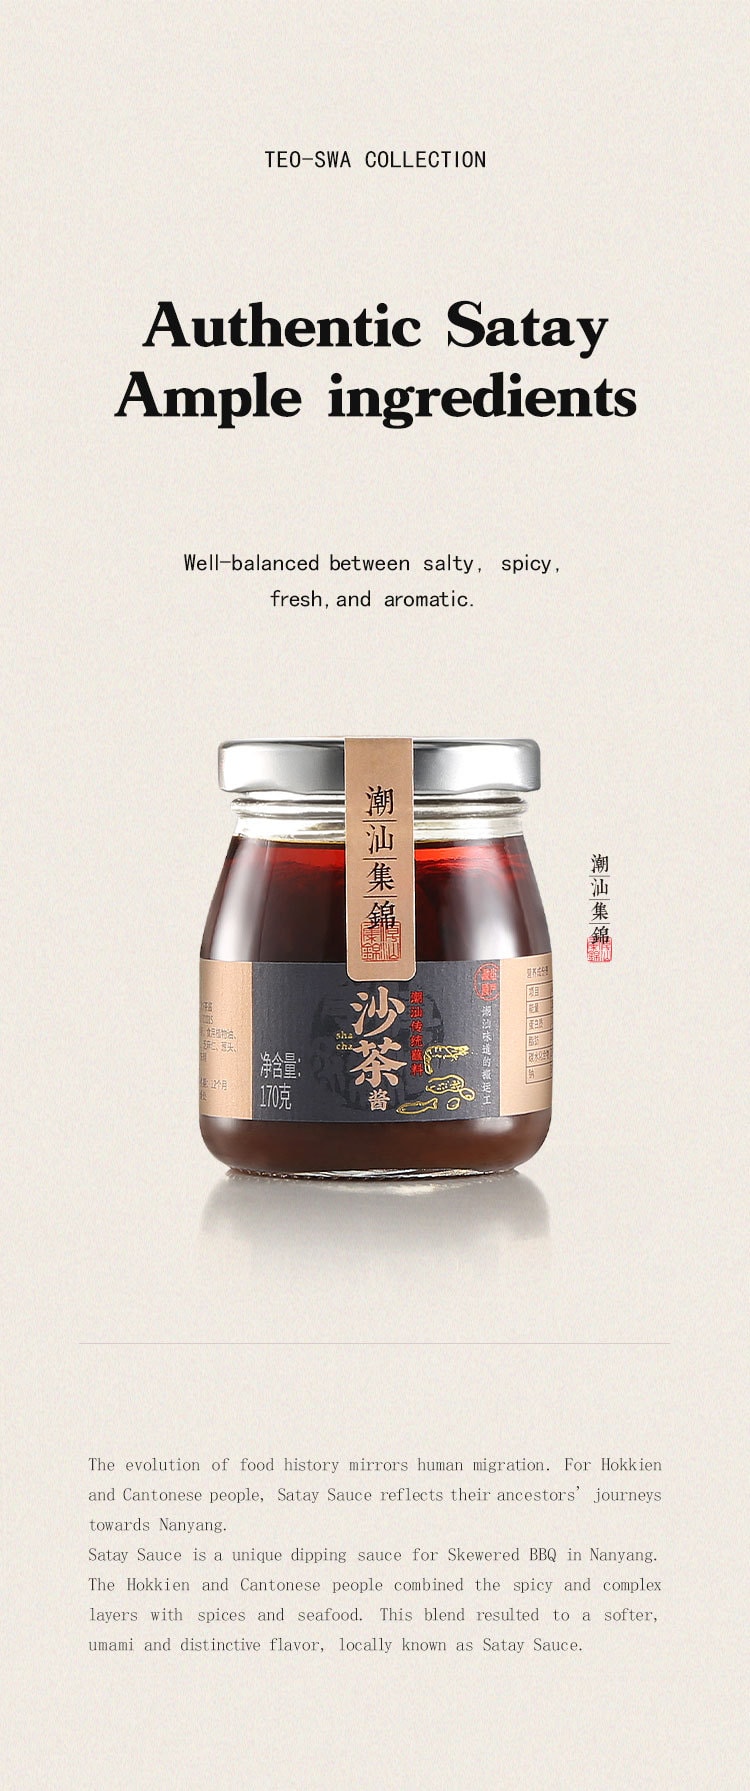 中國潮汕集錦 拌麵套裝 沙茶醬 紅香辣醬 蒜頭油 蔥油 640克